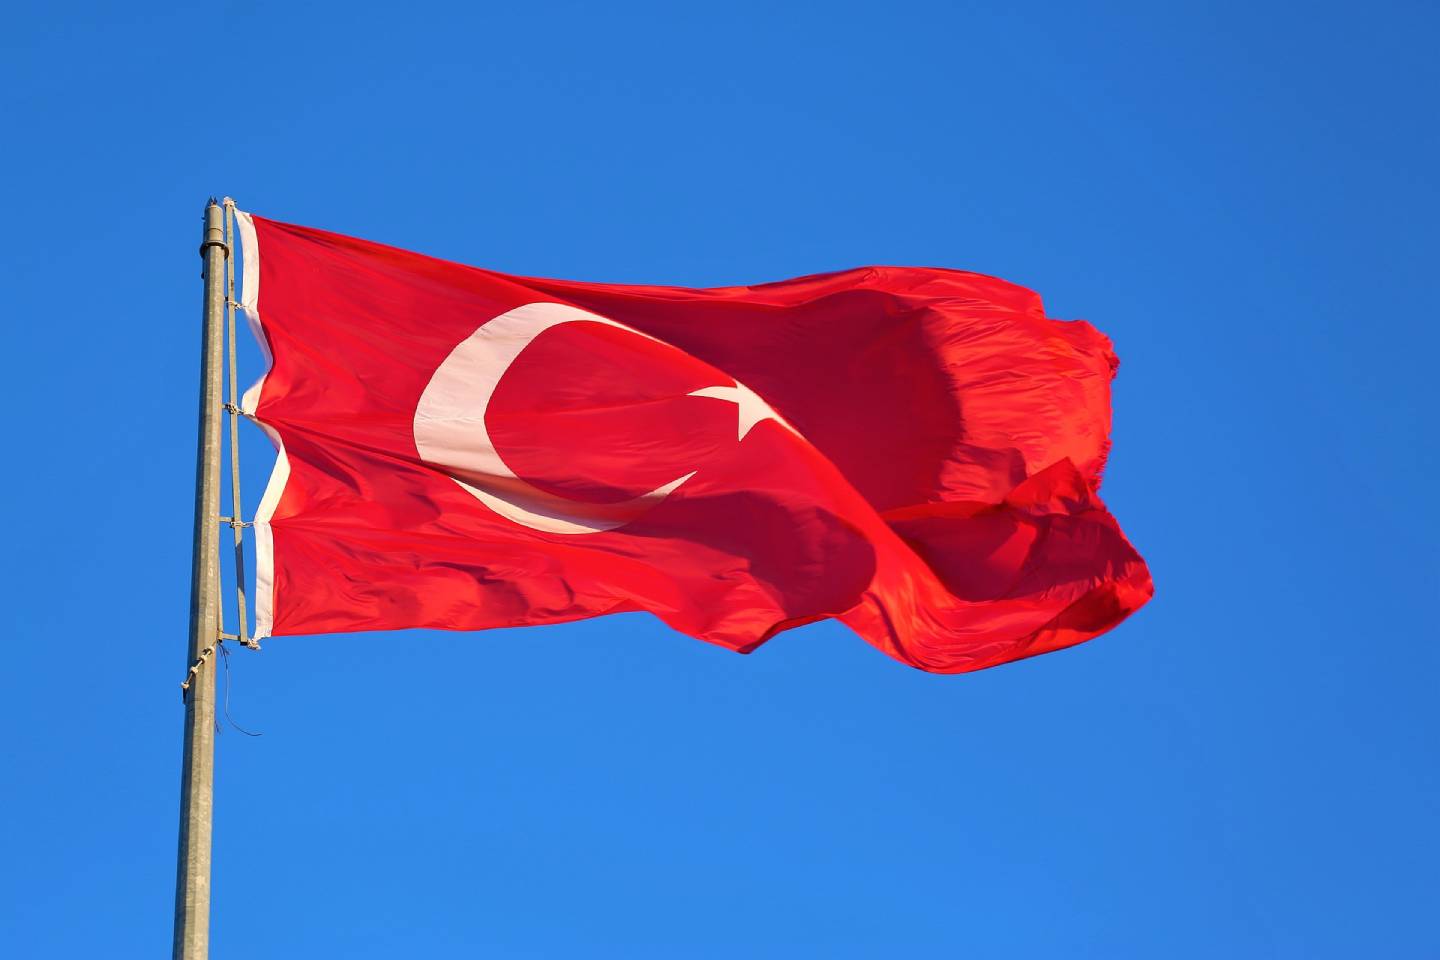 Новости мира / Политика в мире / С бүгіншнего дня из Астаны можно напрямую долететь до столицы Турции